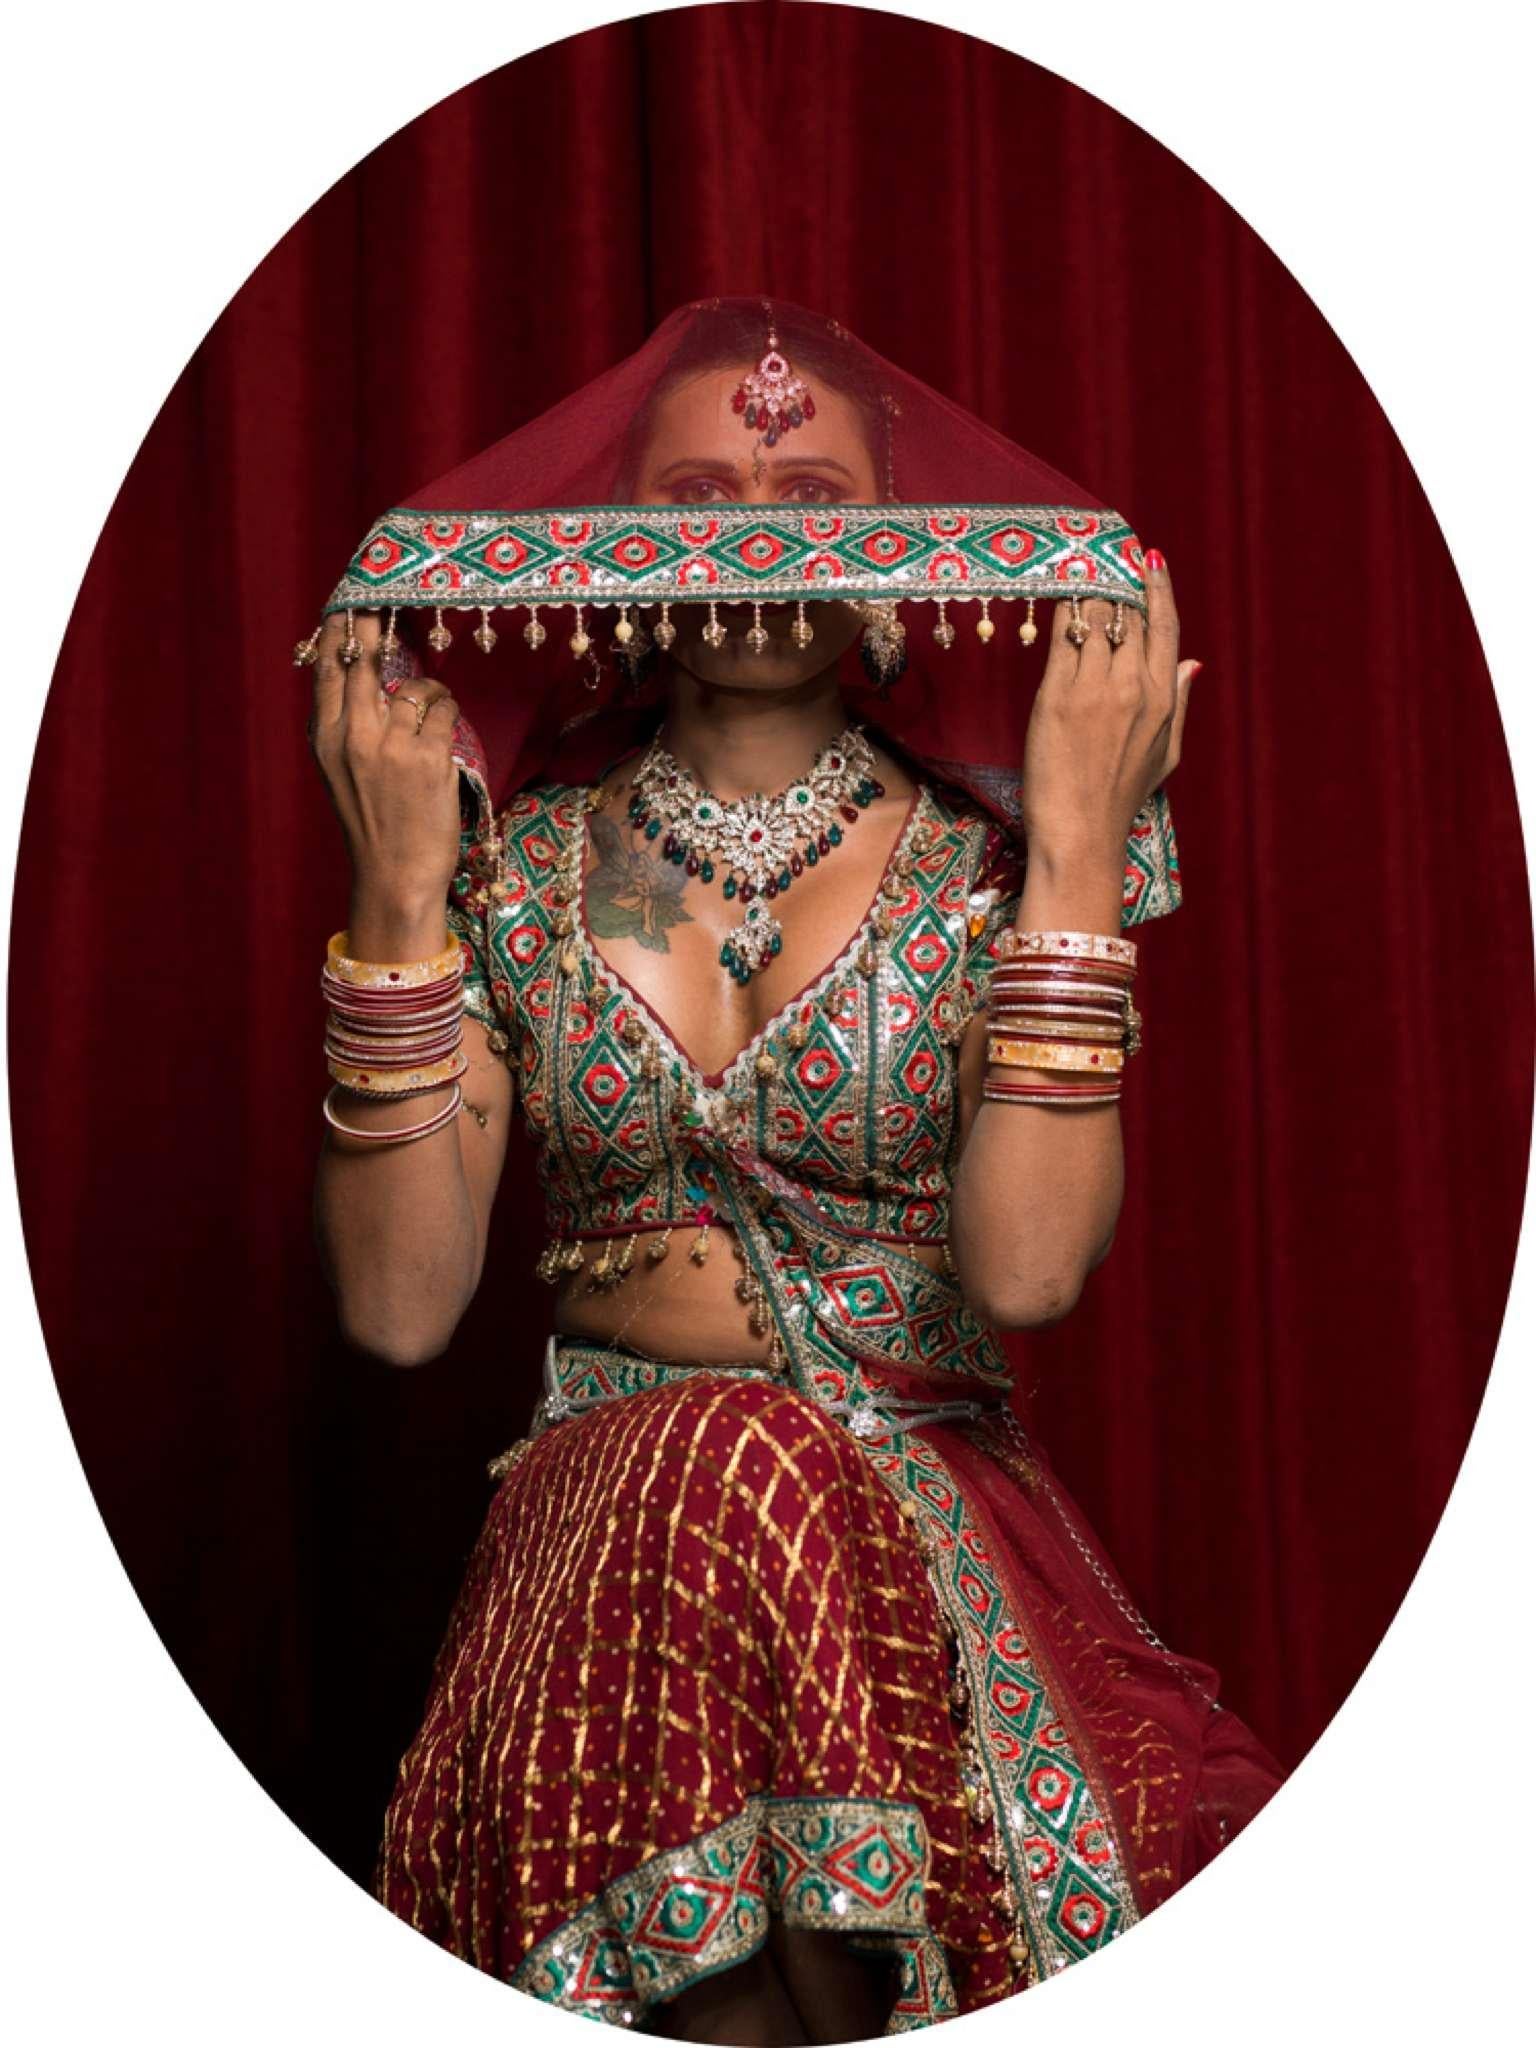 Harsha, Protrait. Aus der Serie The Third Gender of India